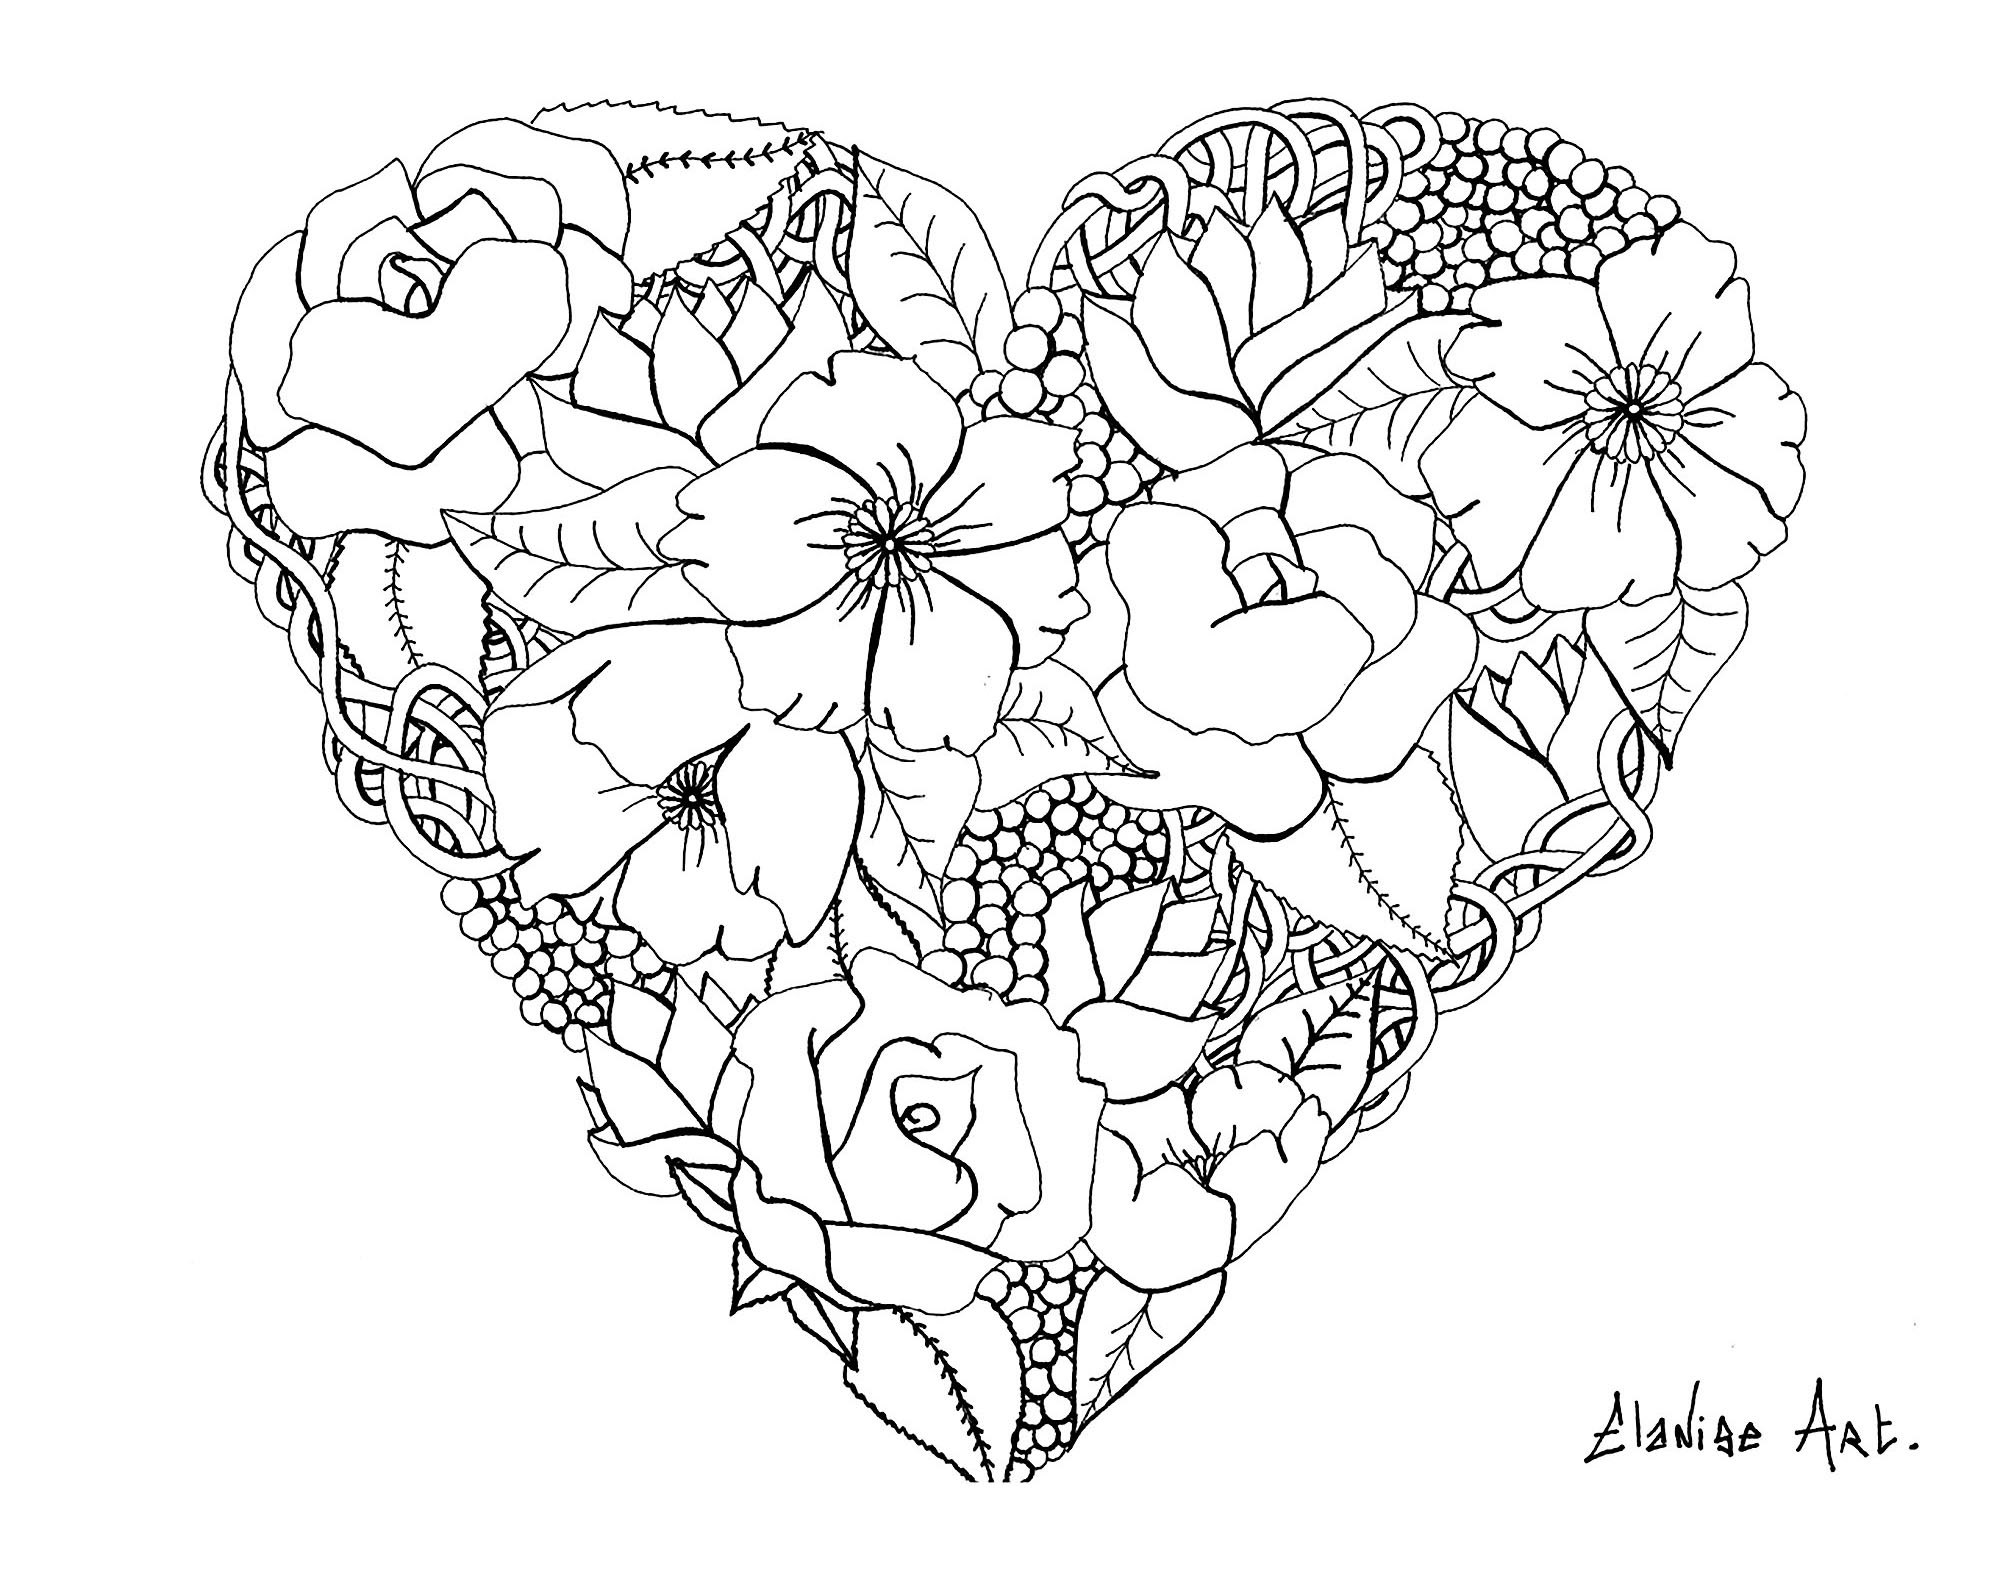 Grazioso cuore fiorito, di Elanise. Non si tratta di un vero e proprio mandala, ma di una pagina da colorare che presenta un cuore con fiori realistici.